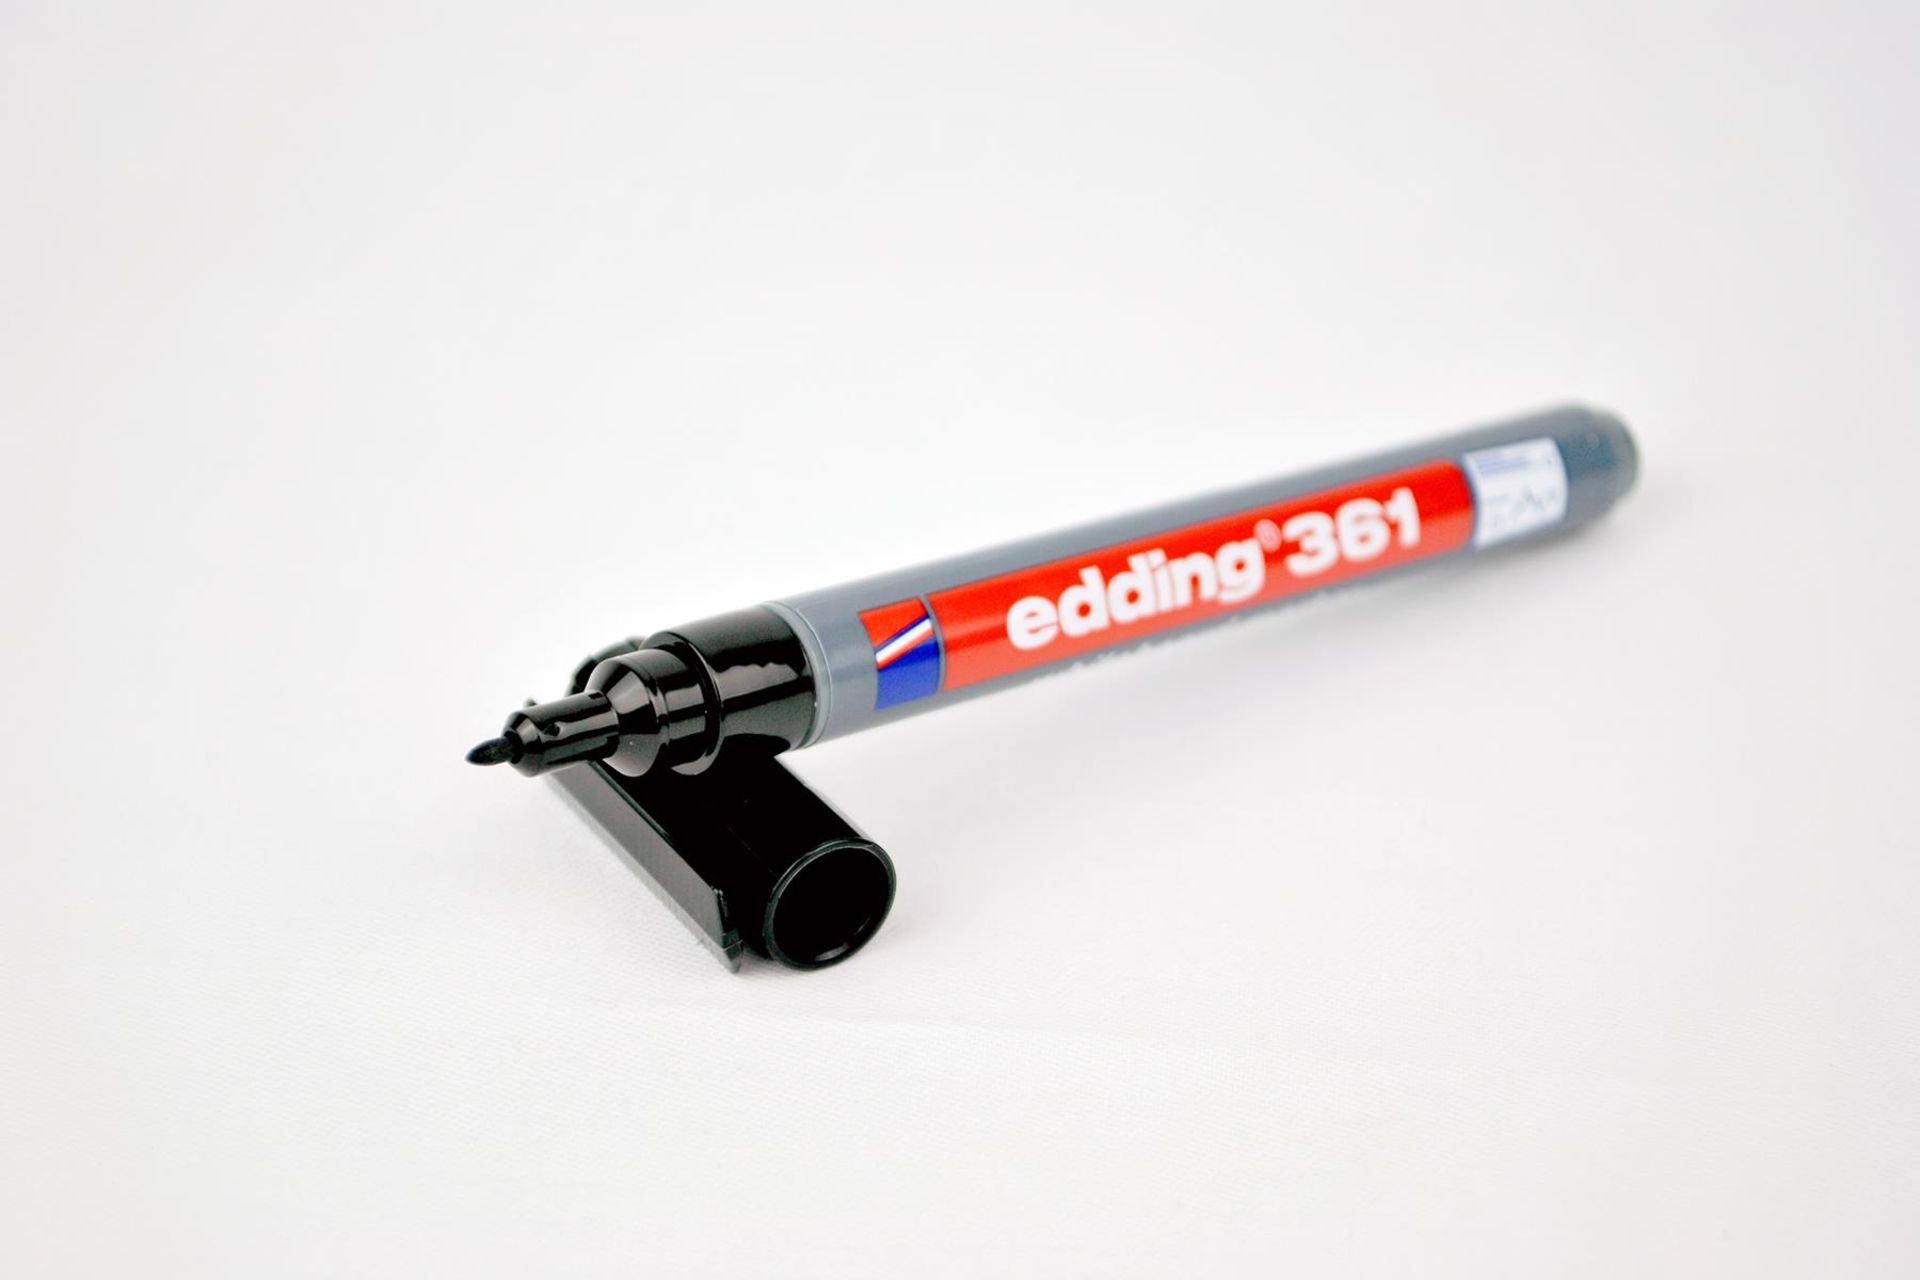 Black Whiteboard Marker Pen Edding 361 x200 RRP £120 - Image 2 of 3